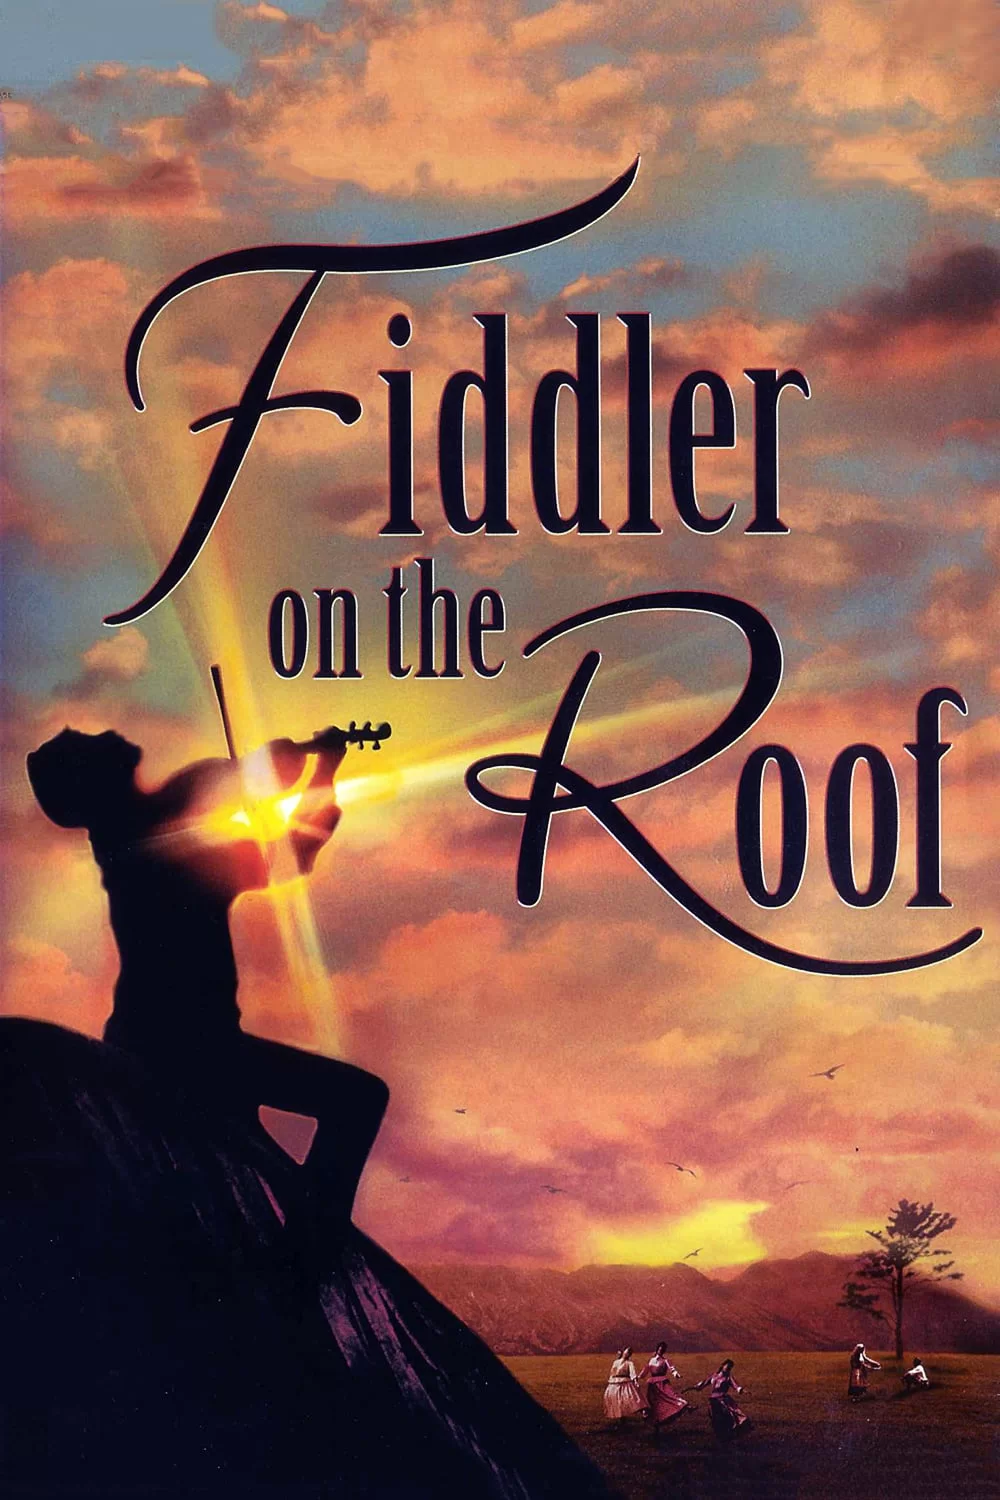 屋顶上的小提琴手 蓝光原盘下载+高清MKV版/屋顶上的提琴手 / 锦绣良缘 1971 Fiddler on the Roof 44.2G